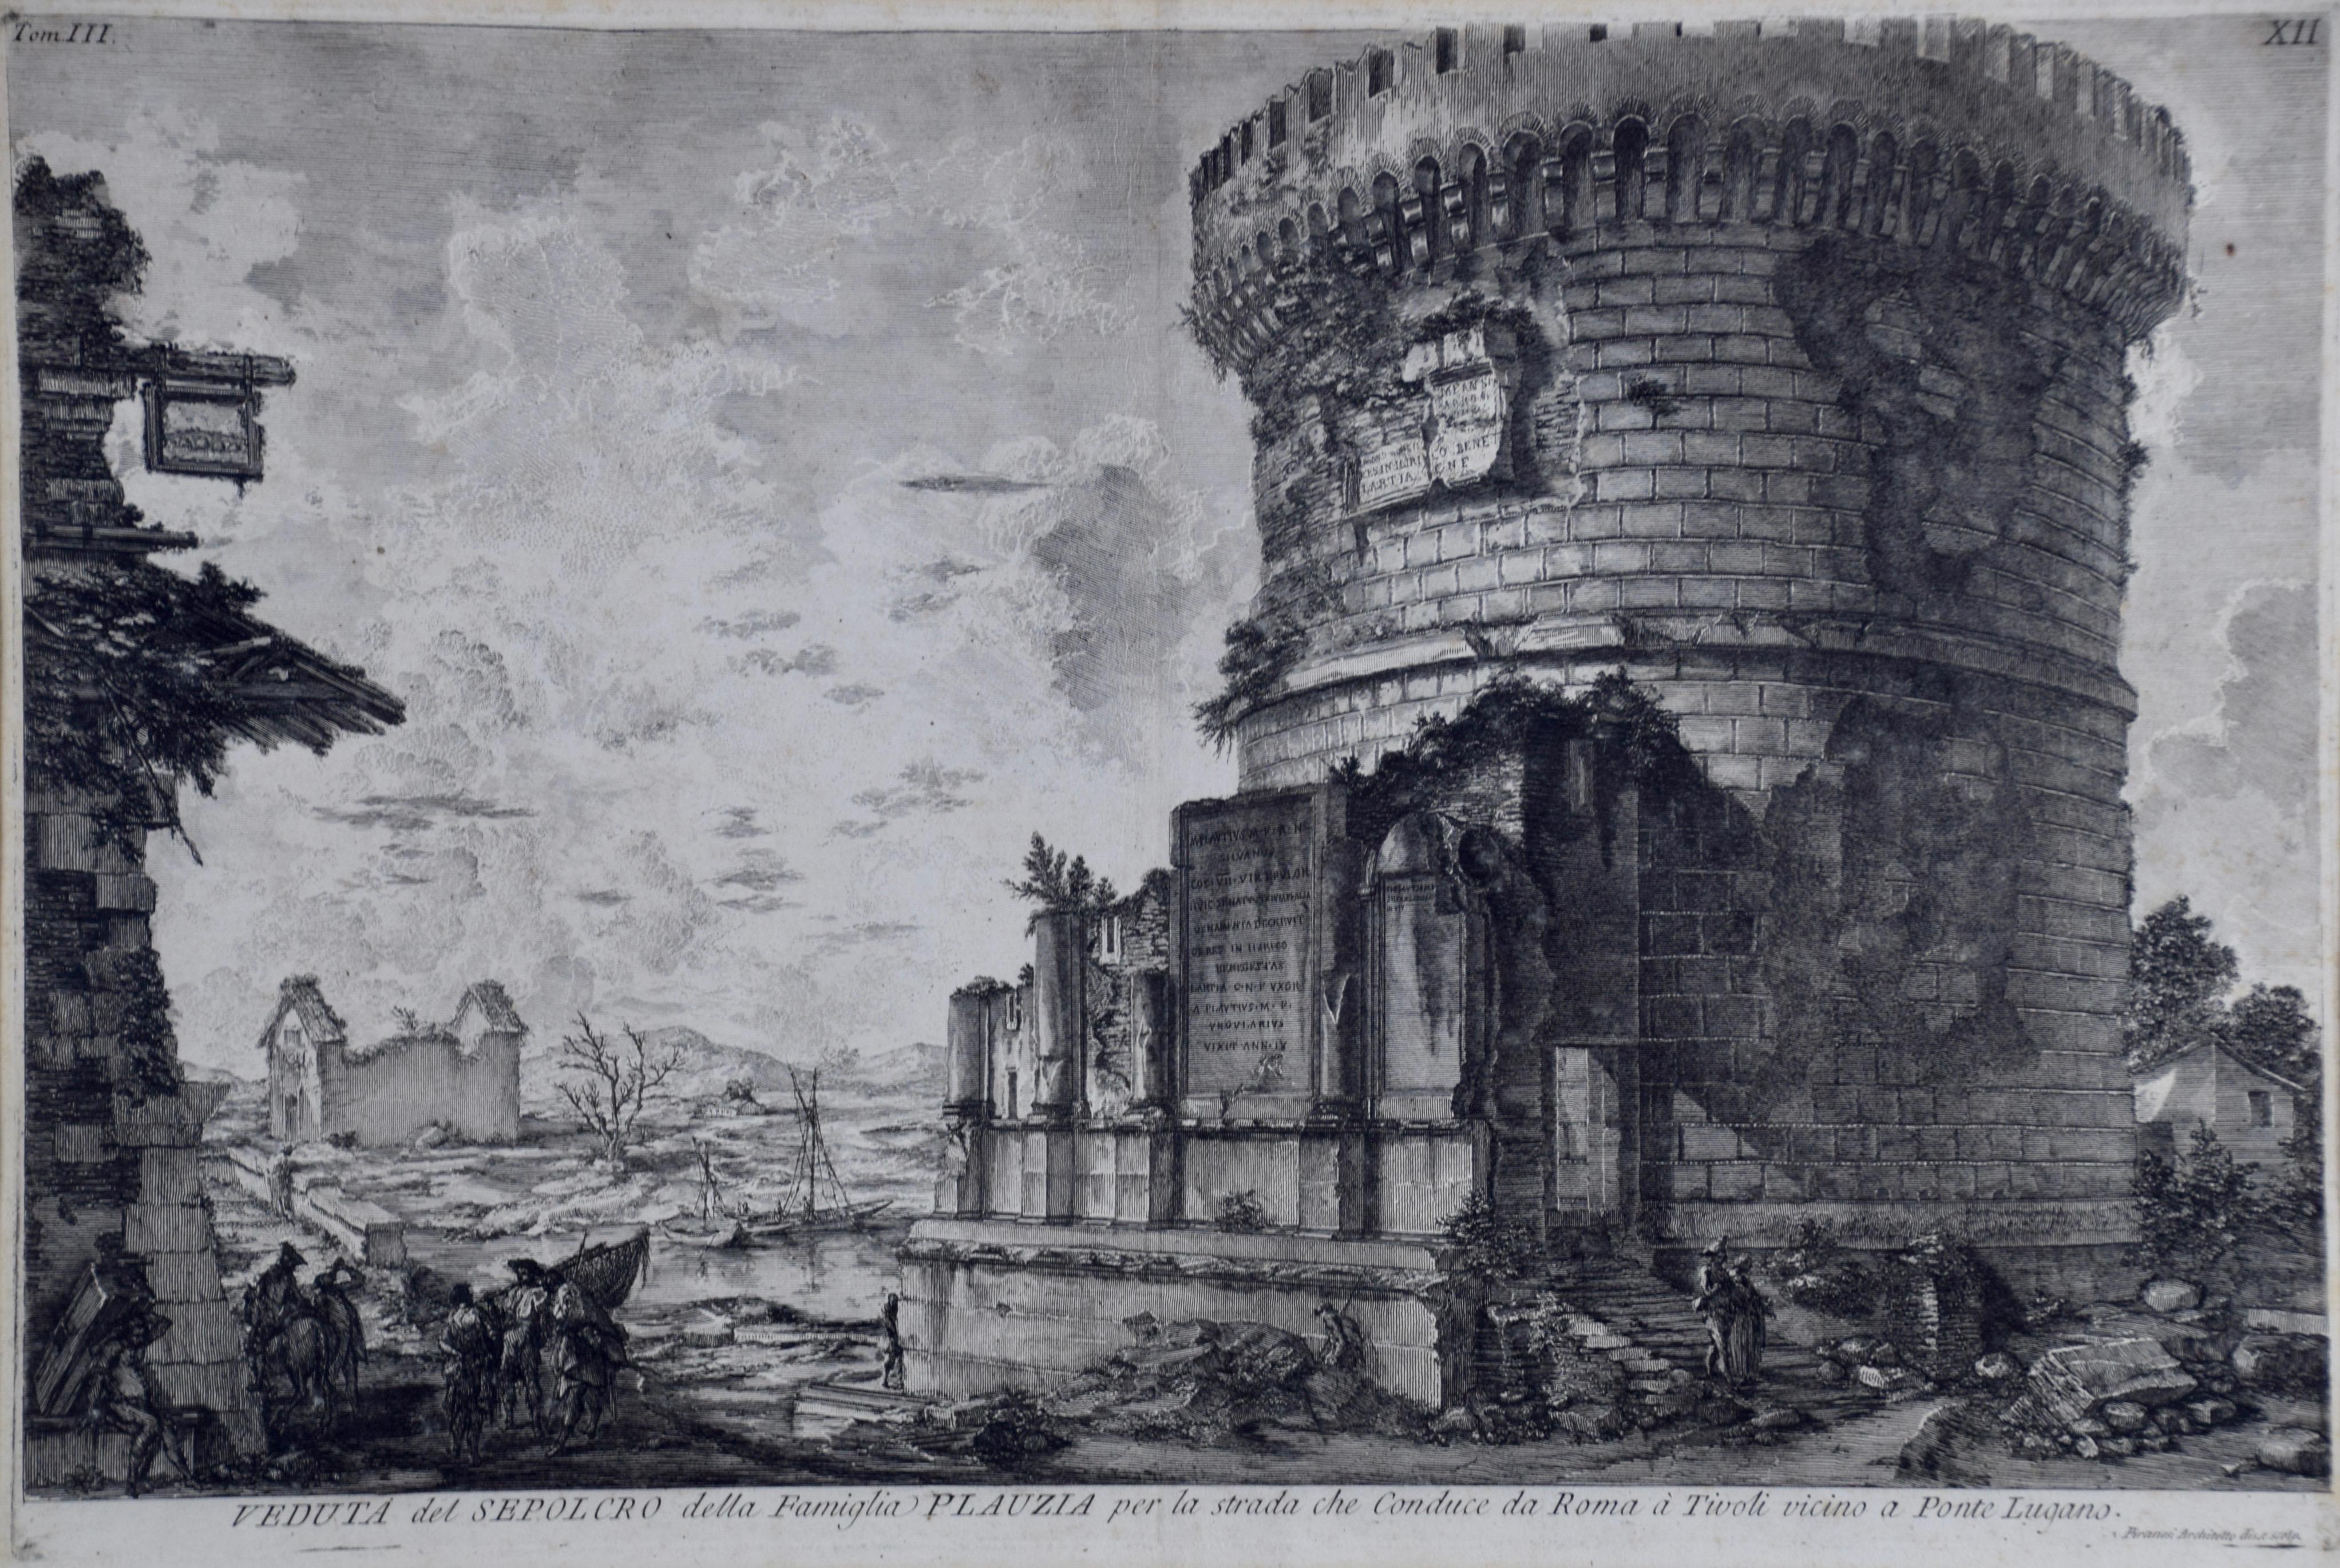 Giovanni Piranesi, Radierung antiker römischer Architektur, 18. Jahrhundert – Print von Giovanni Battista Piranesi